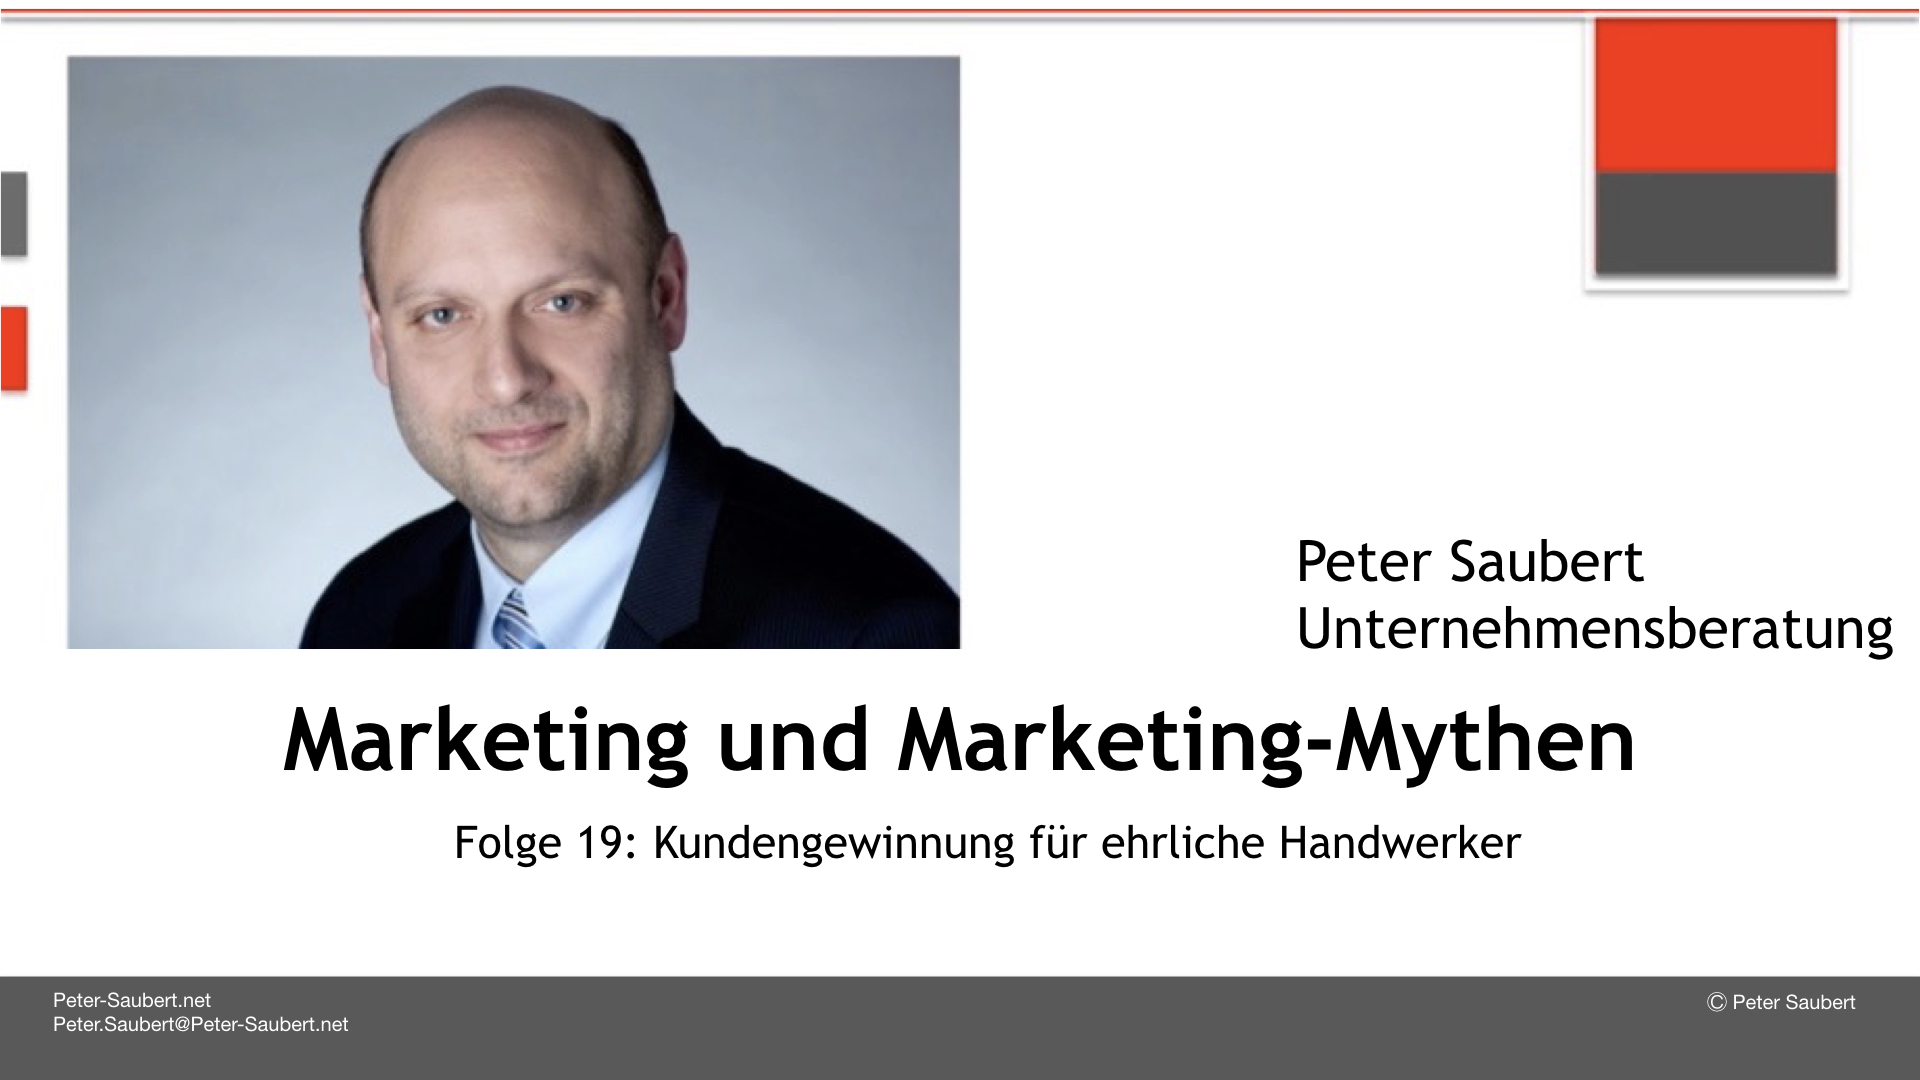 Marketing & Marketing-Mythen Folge 19: Kundengewinnung für Handwerker